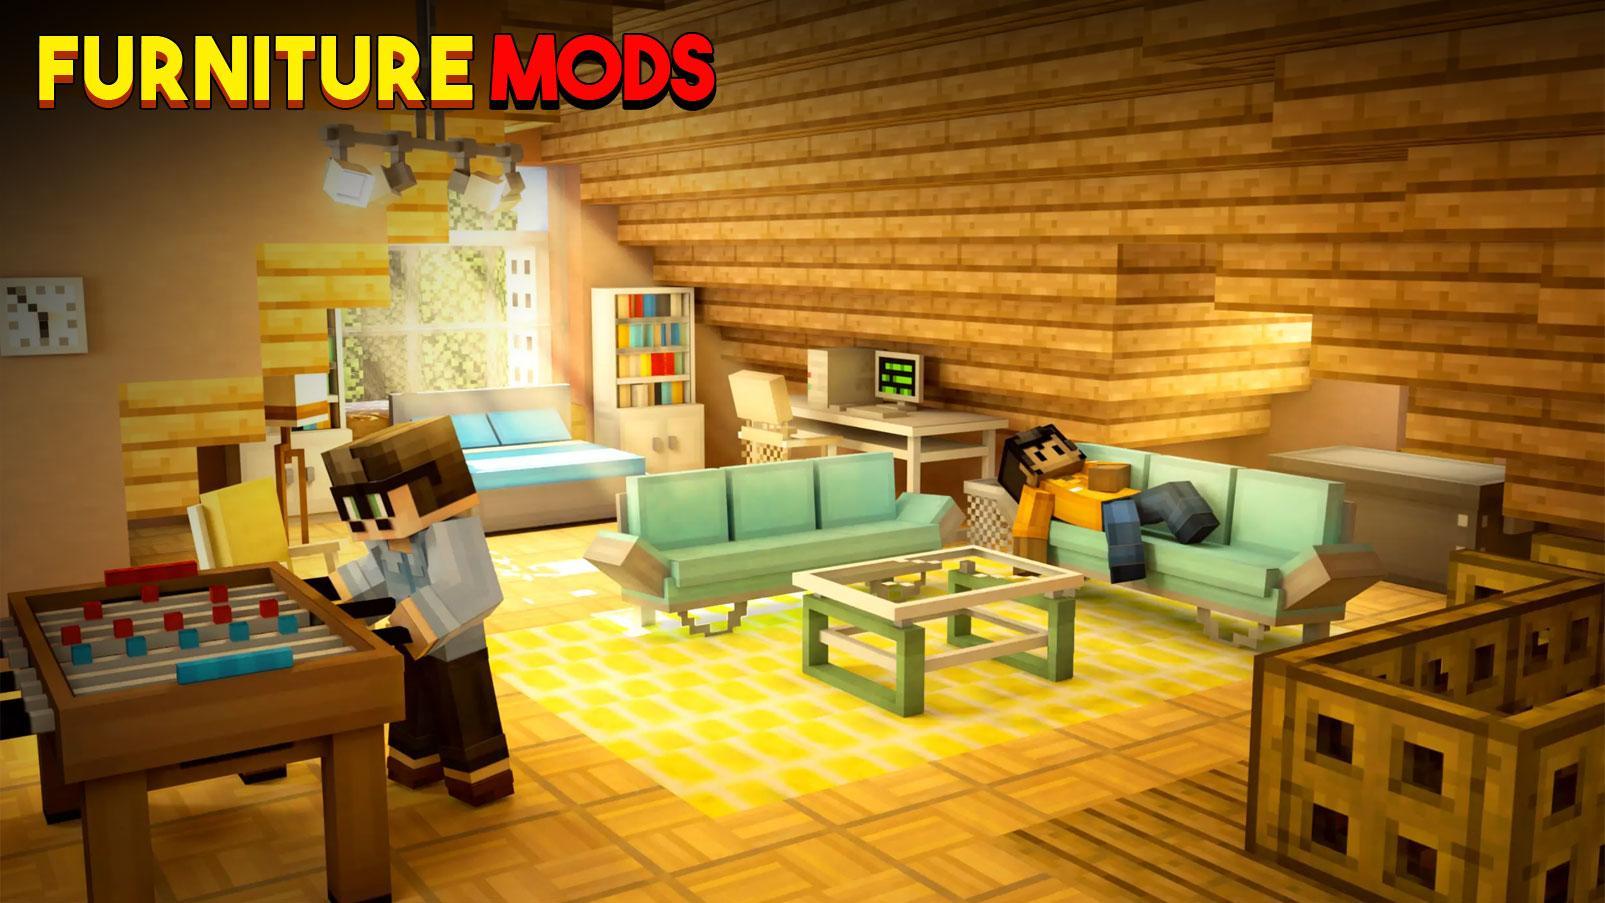 Android 用の 新しい家具mod Apk をダウンロード